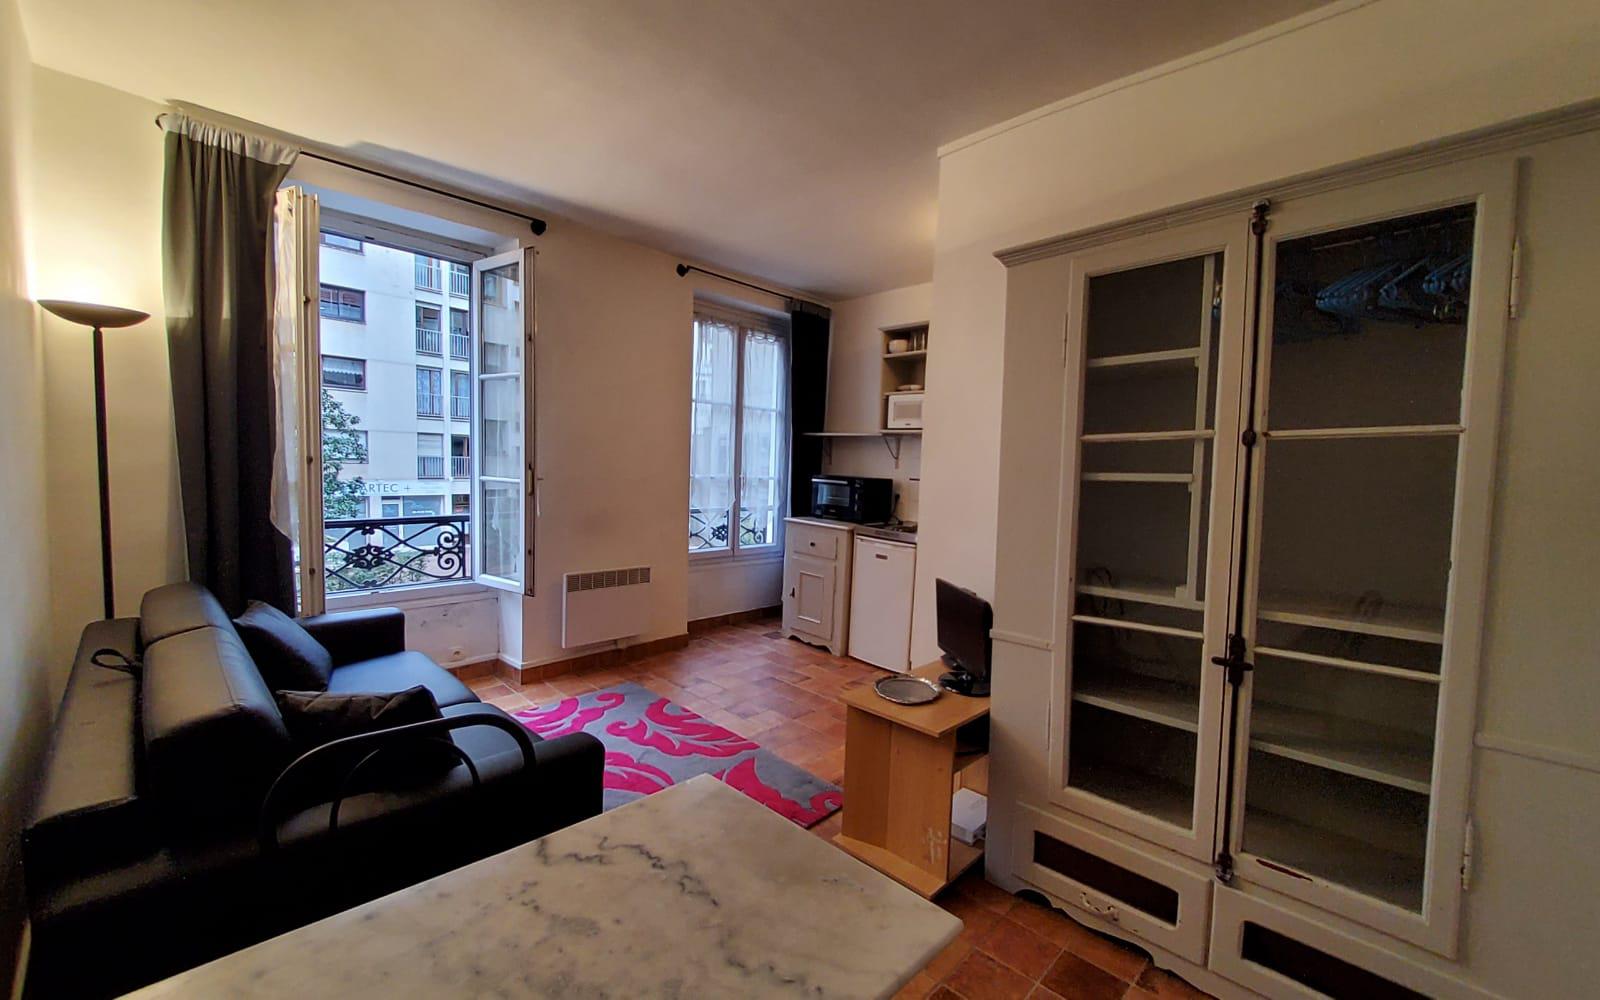  Paris  location meubl e Appartement  type  t1 studio Square 